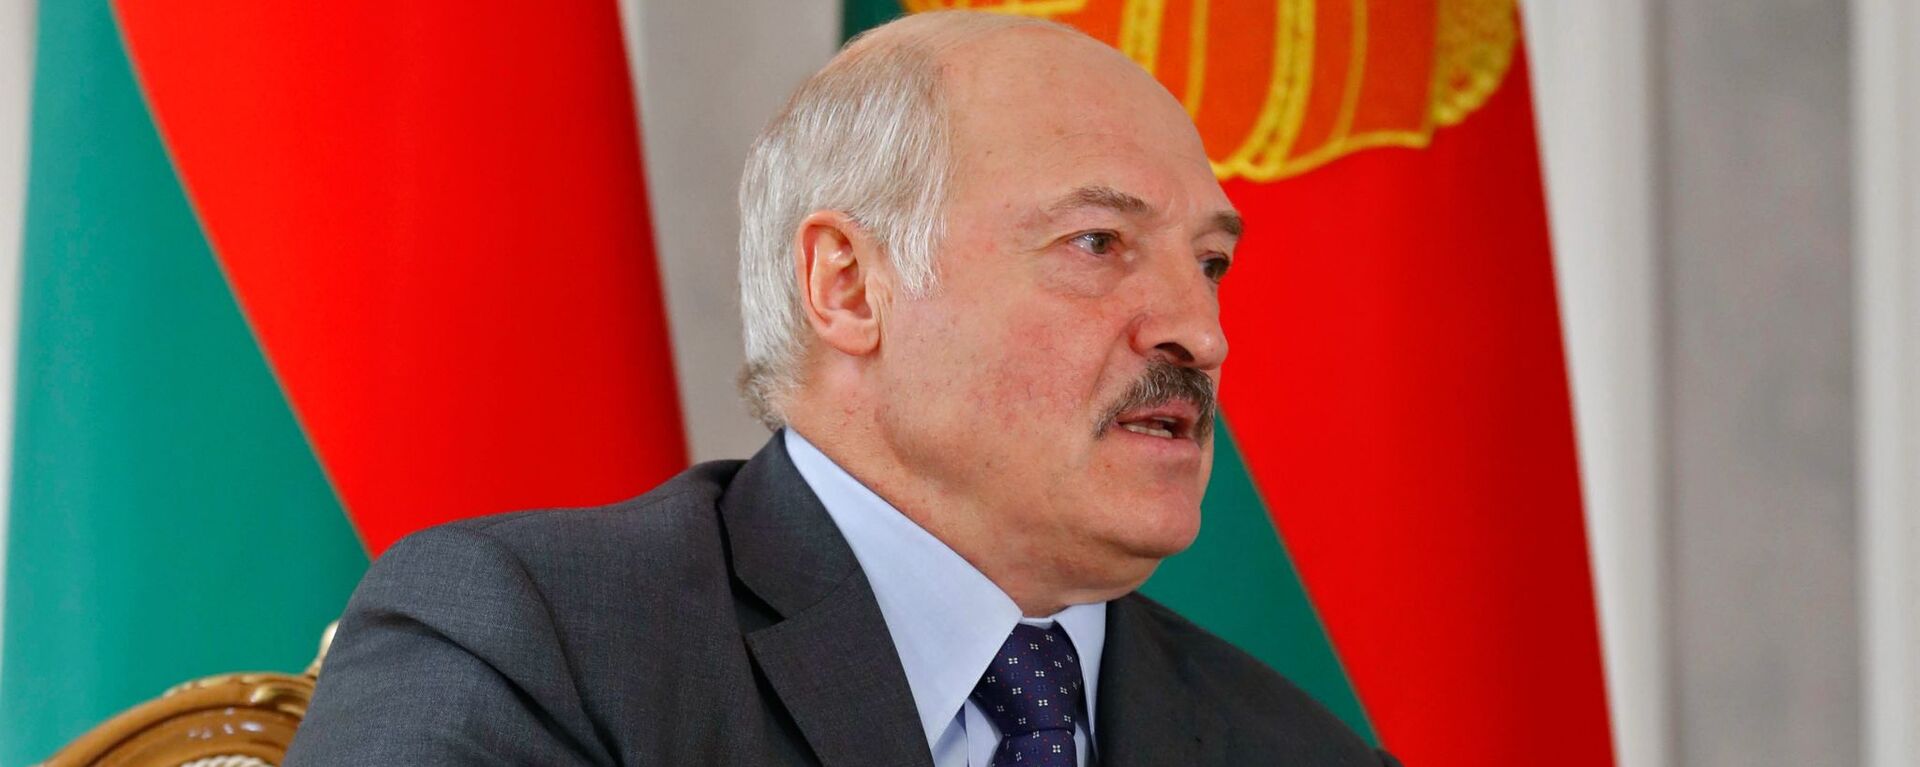 Alexandr Lukashenko, presidente de Bielorrusia - Sputnik Mundo, 1920, 20.07.2021